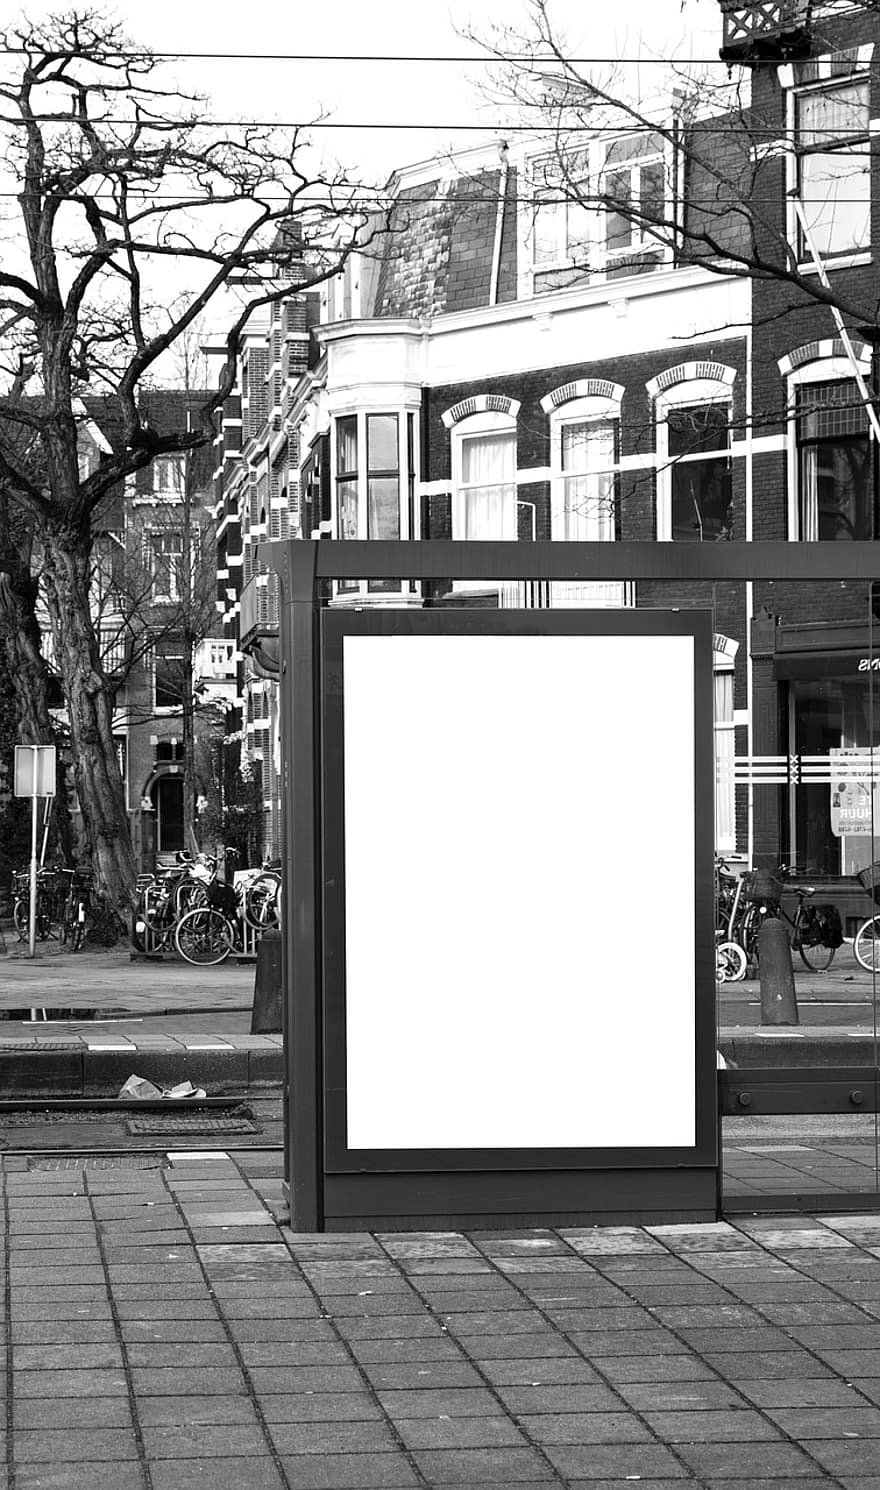 anunci, publicitat, banner, cartellera, parada d'autobús, europa, còpia espai